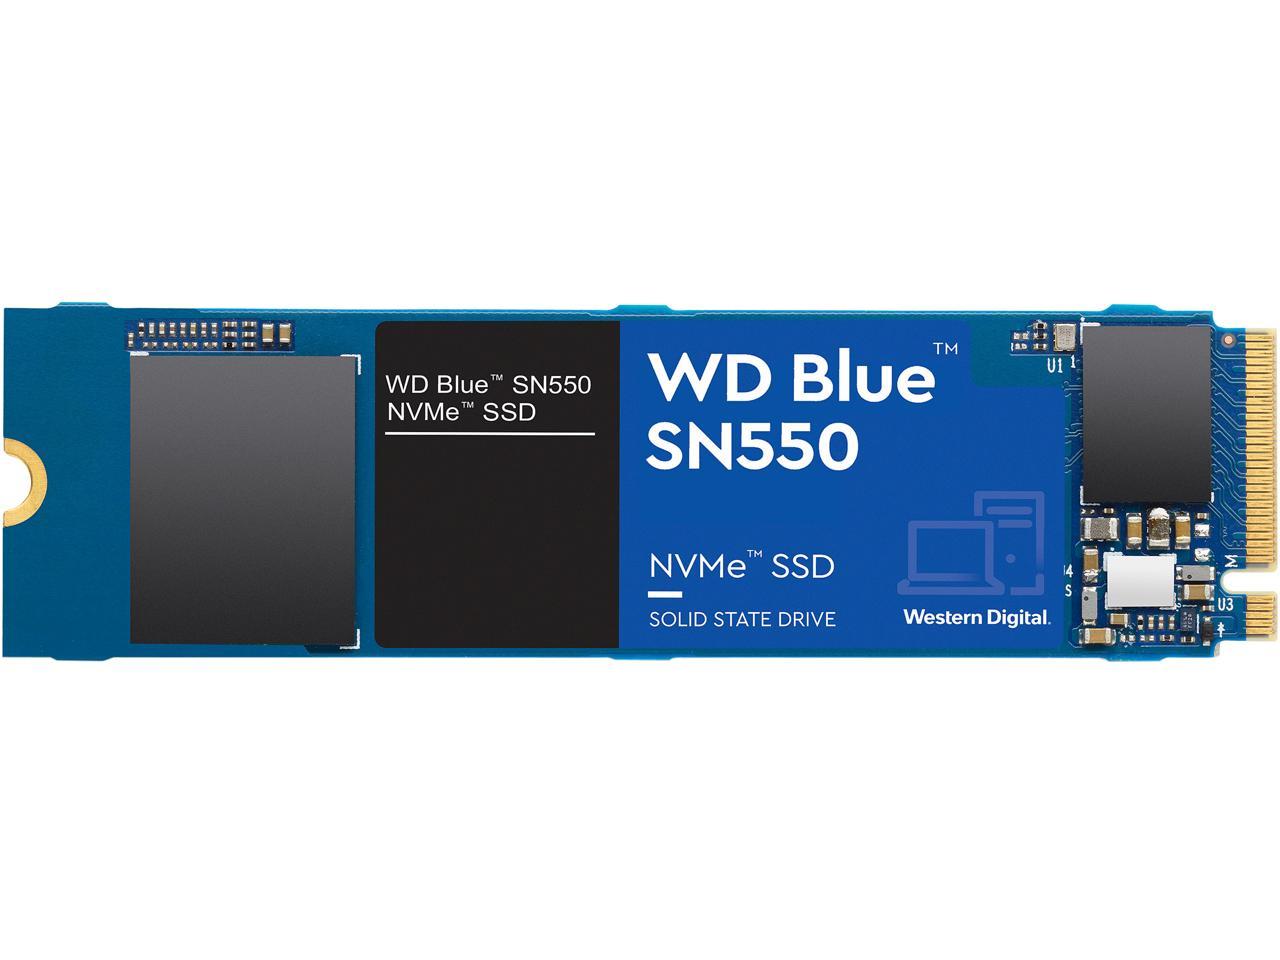 1TB Western Digital WD Blue SN550 NVMe SSD @Newegg $90